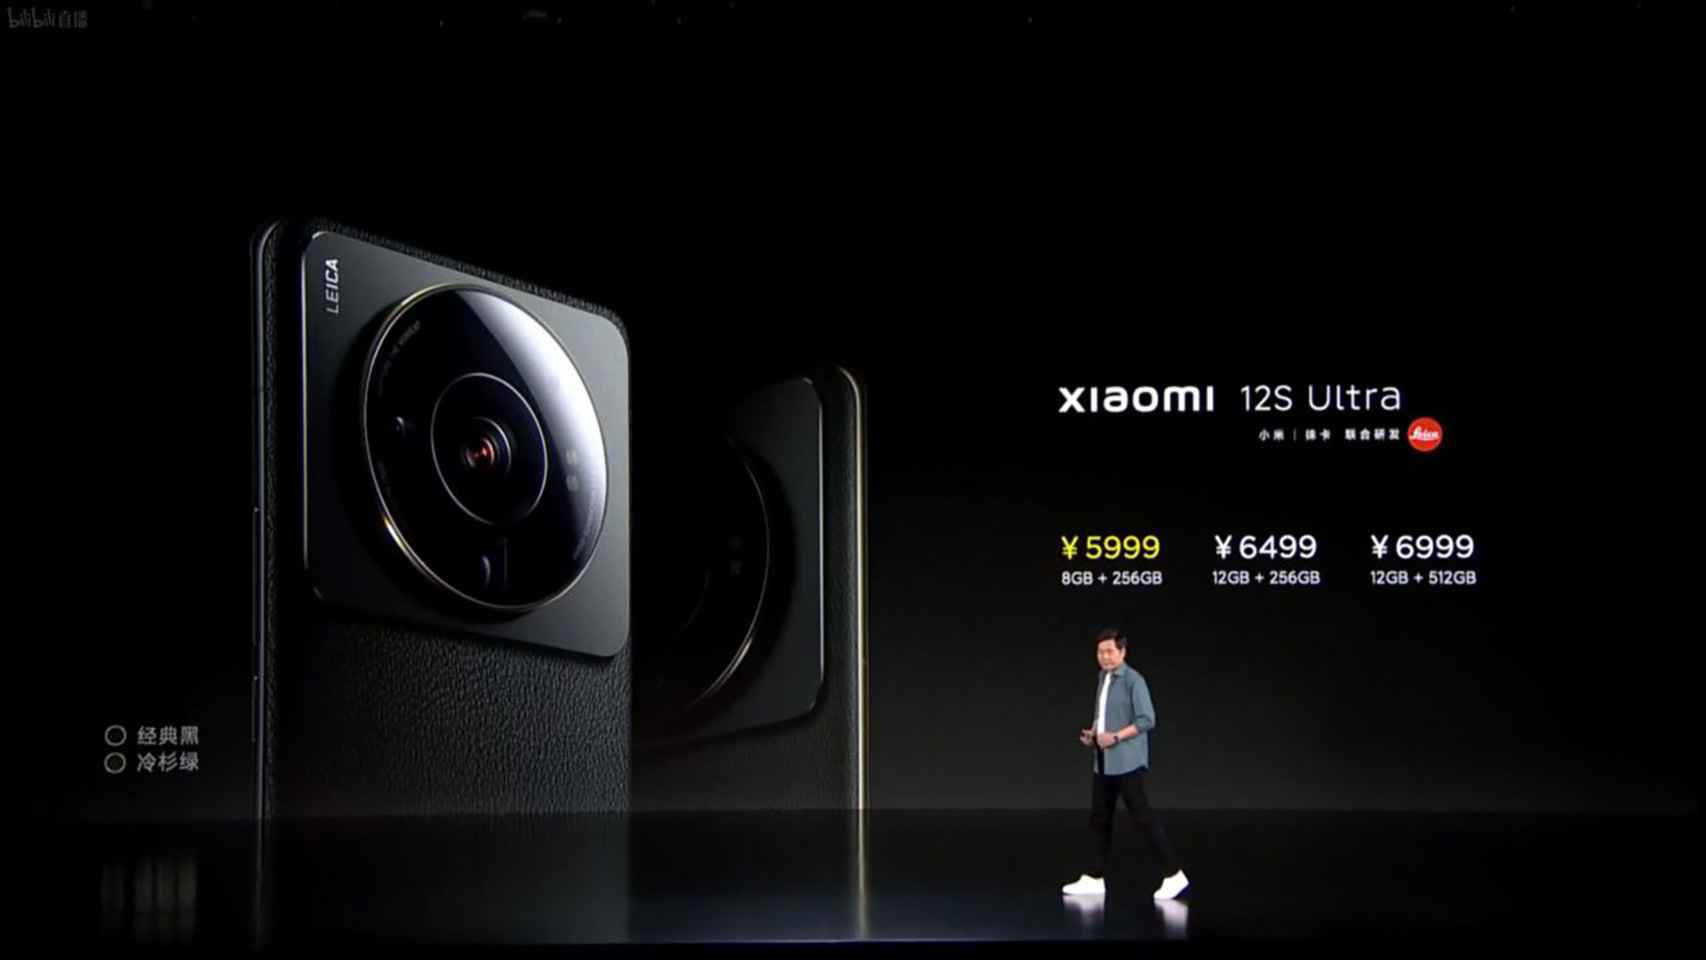 Precios del Xiaomi 12S Ultra